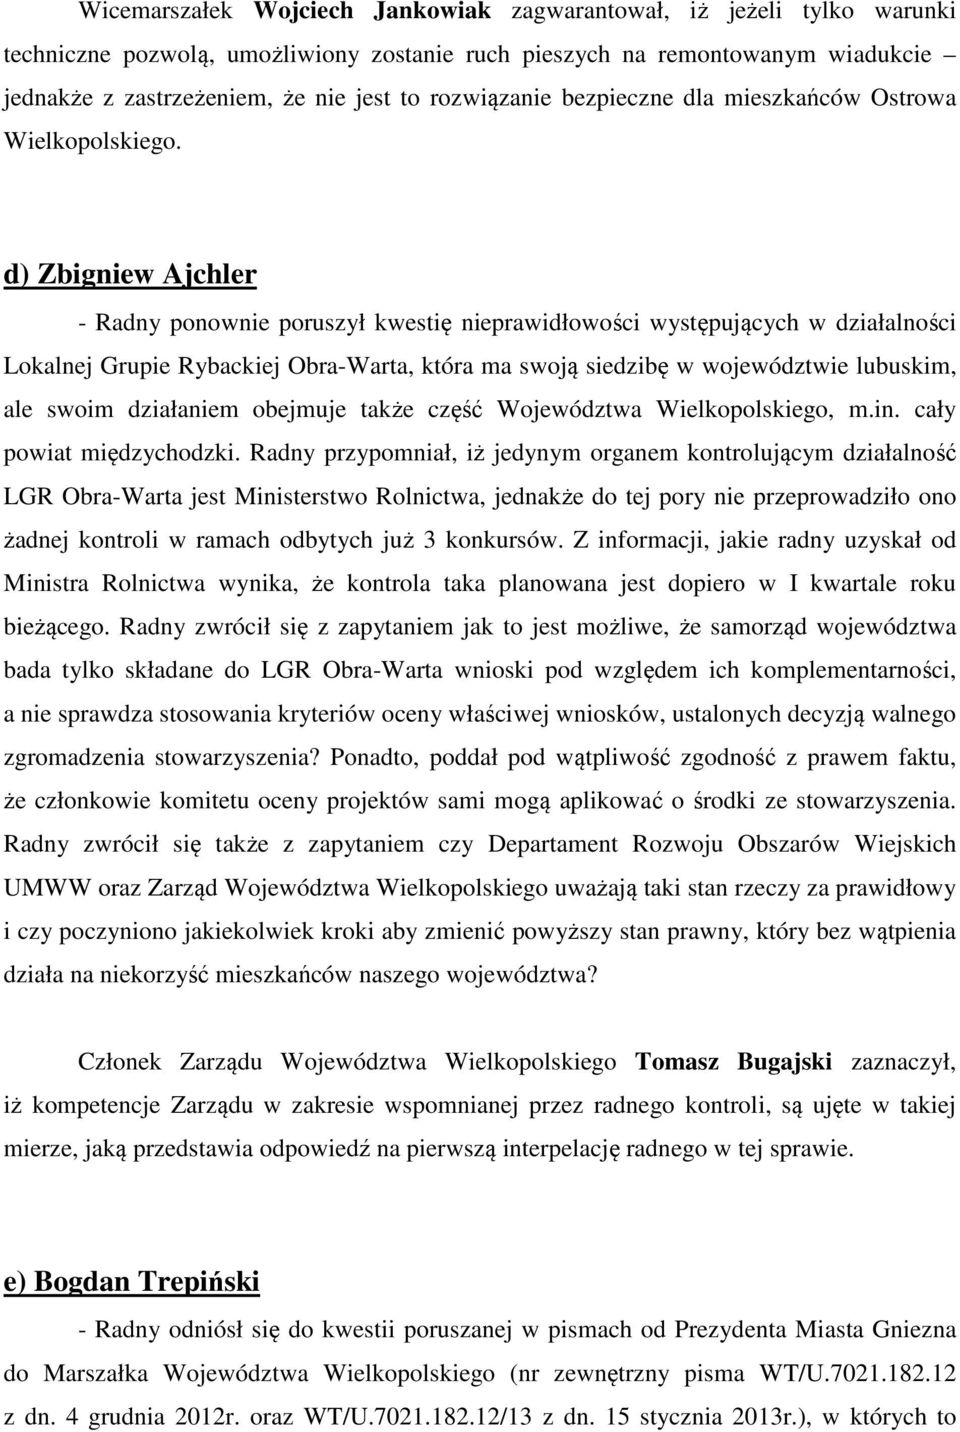 d) Zbigniew Ajchler - Radny ponownie poruszył kwestię nieprawidłowości występujących w działalności Lokalnej Grupie Rybackiej Obra-Warta, która ma swoją siedzibę w województwie lubuskim, ale swoim